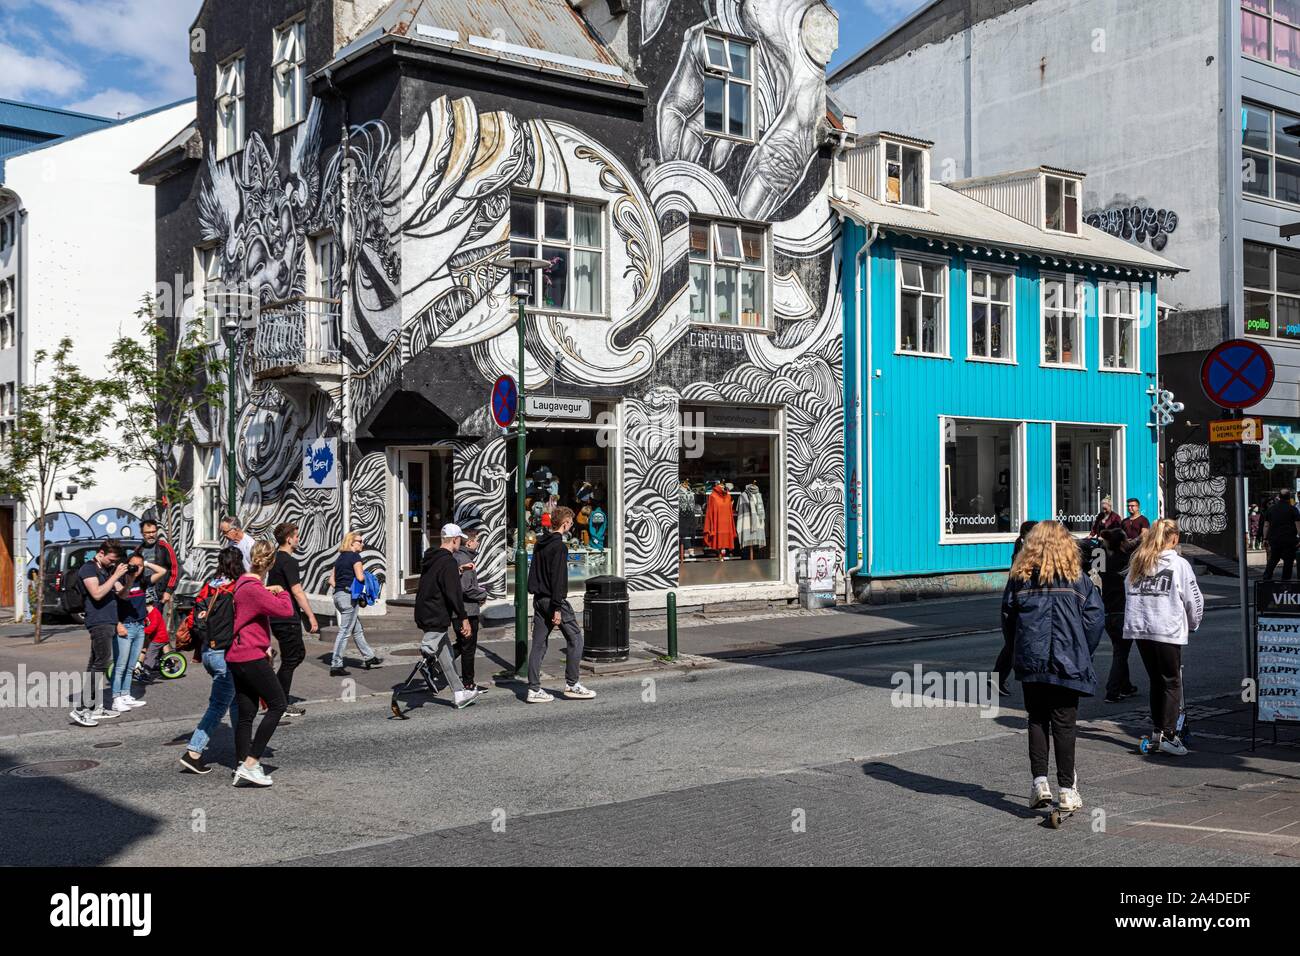 CARATOES STORE, pittura murale nel centro città alla moda, Reykjavik, Islanda, EUROPA Foto Stock